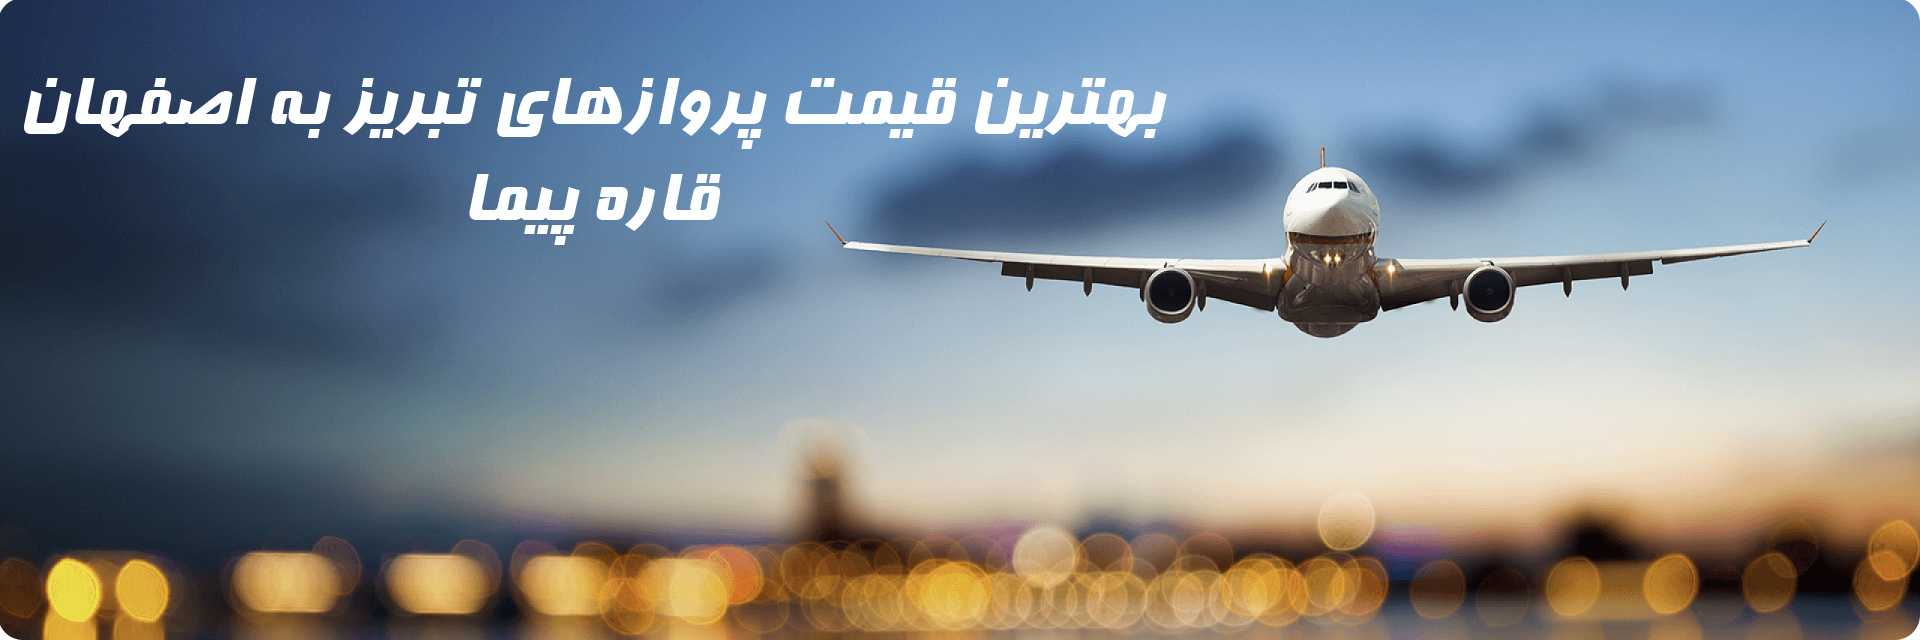 بلیط هواپیما تبریز اصفهان